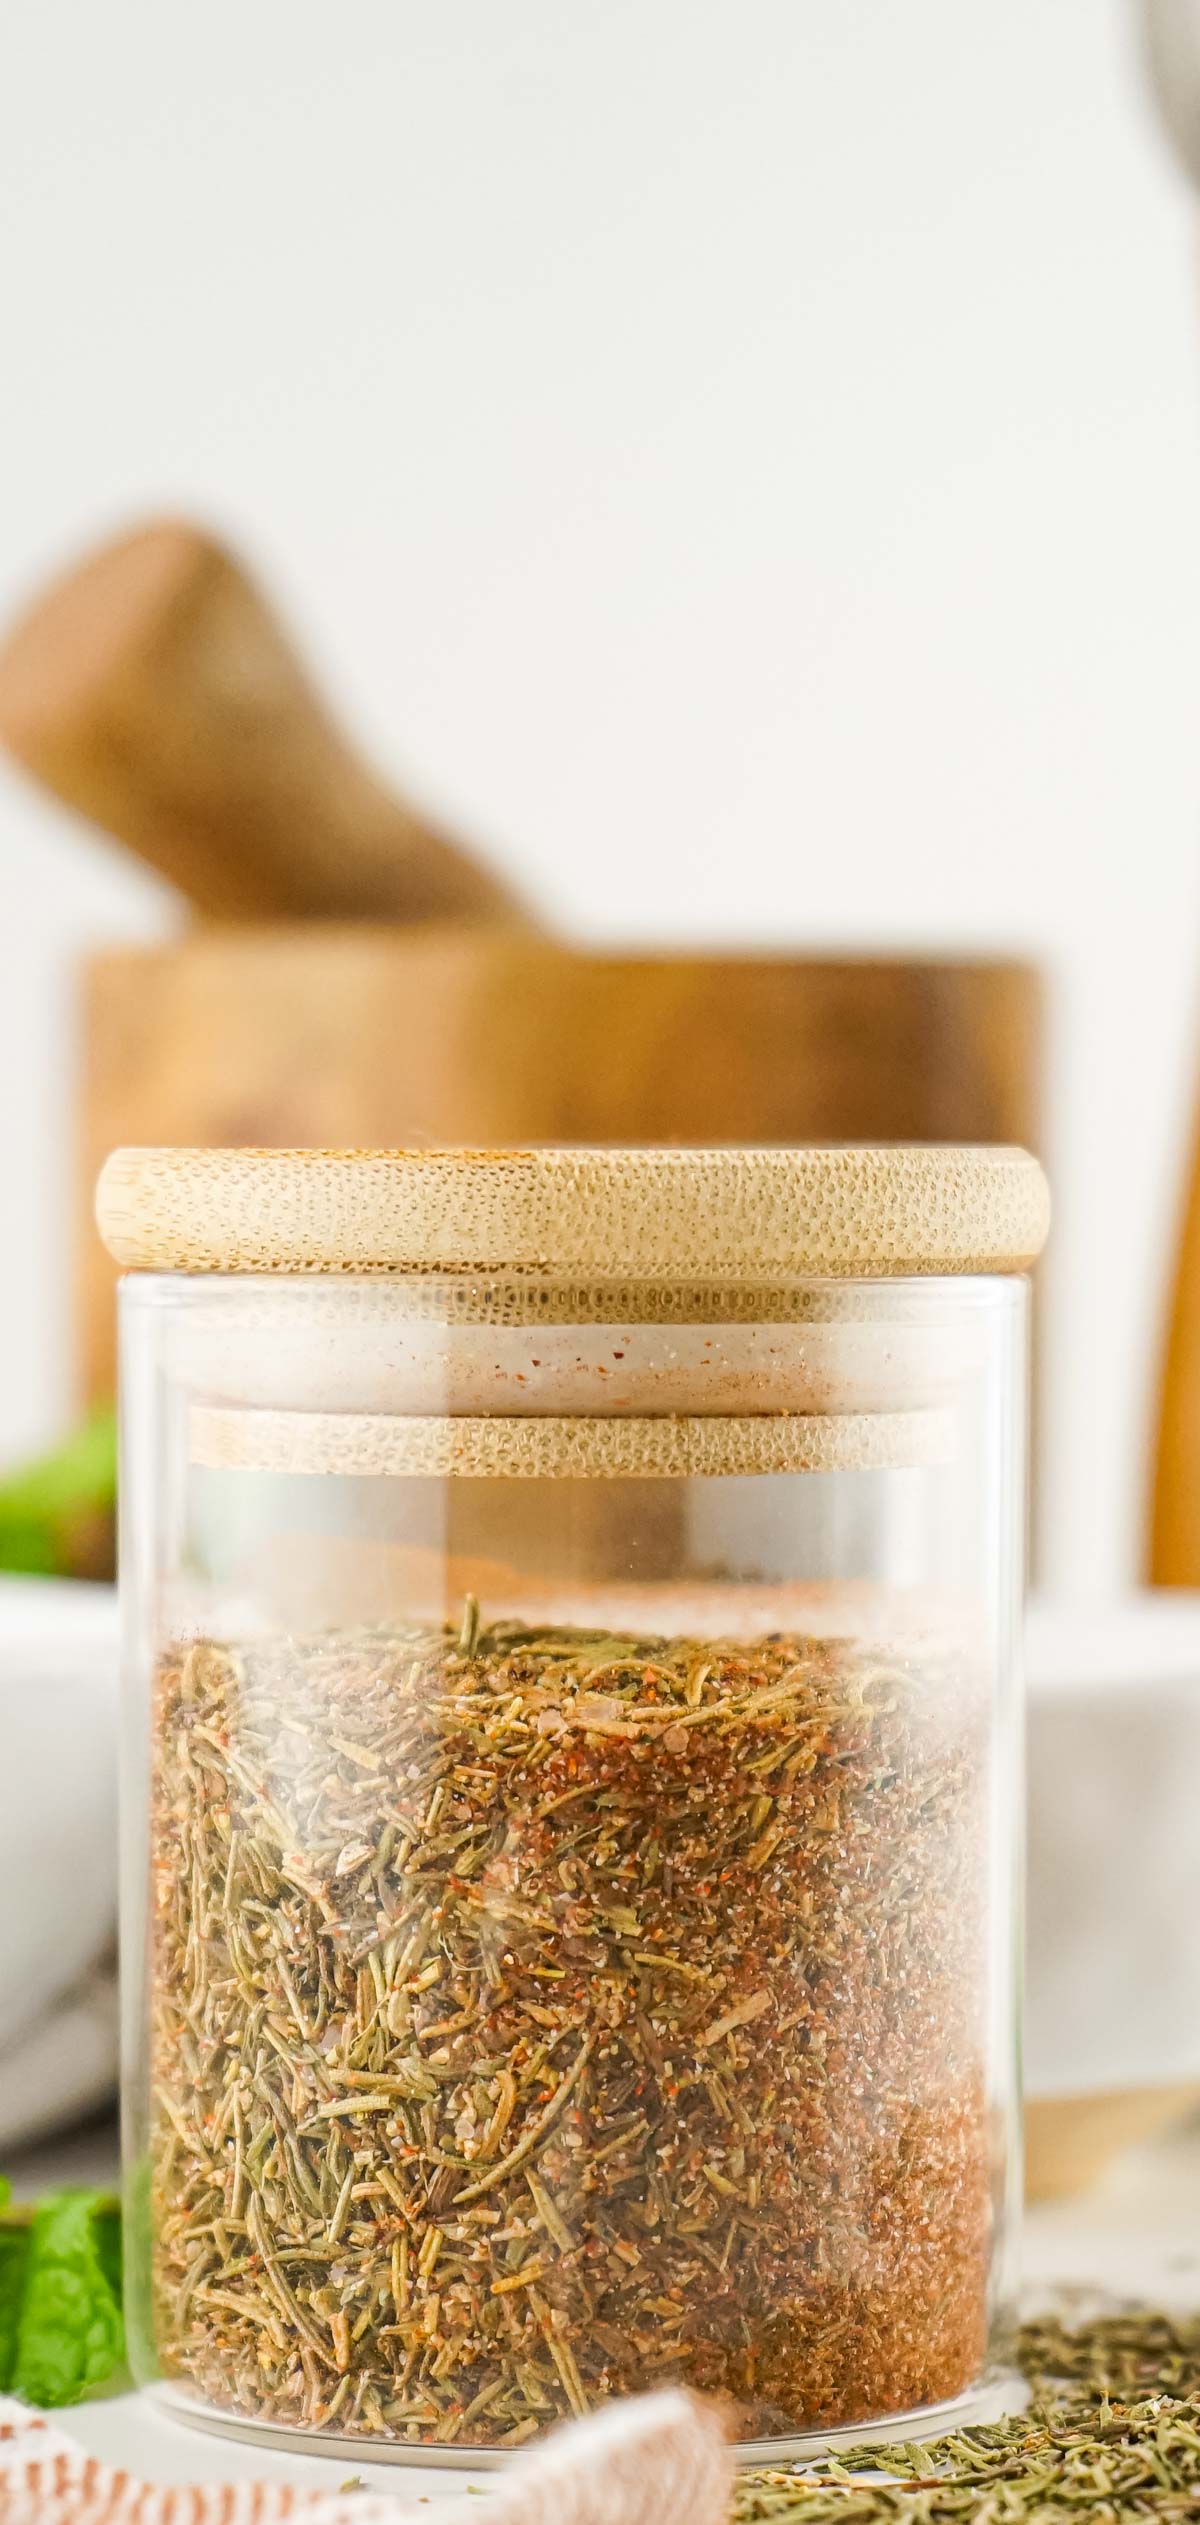 Rub in a sealed spice jar.